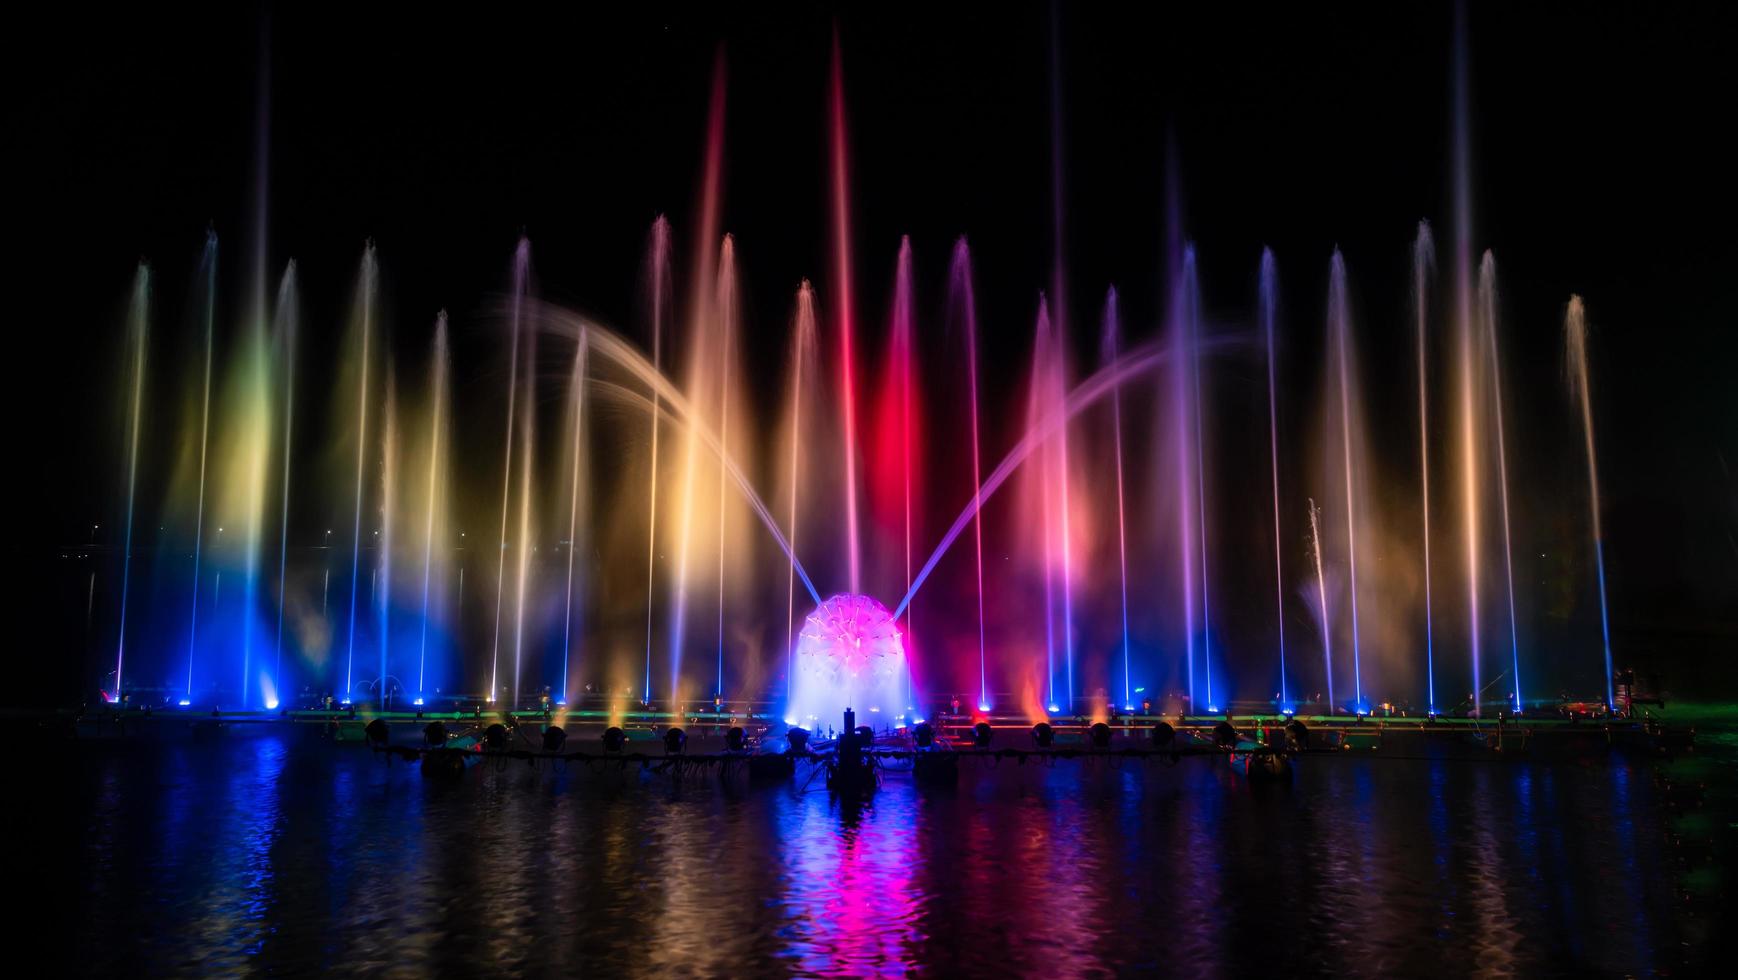 der bunte Springbrunnen tanzt zur Feier des Jahres mit dunklem Nachthimmelhintergrund. foto